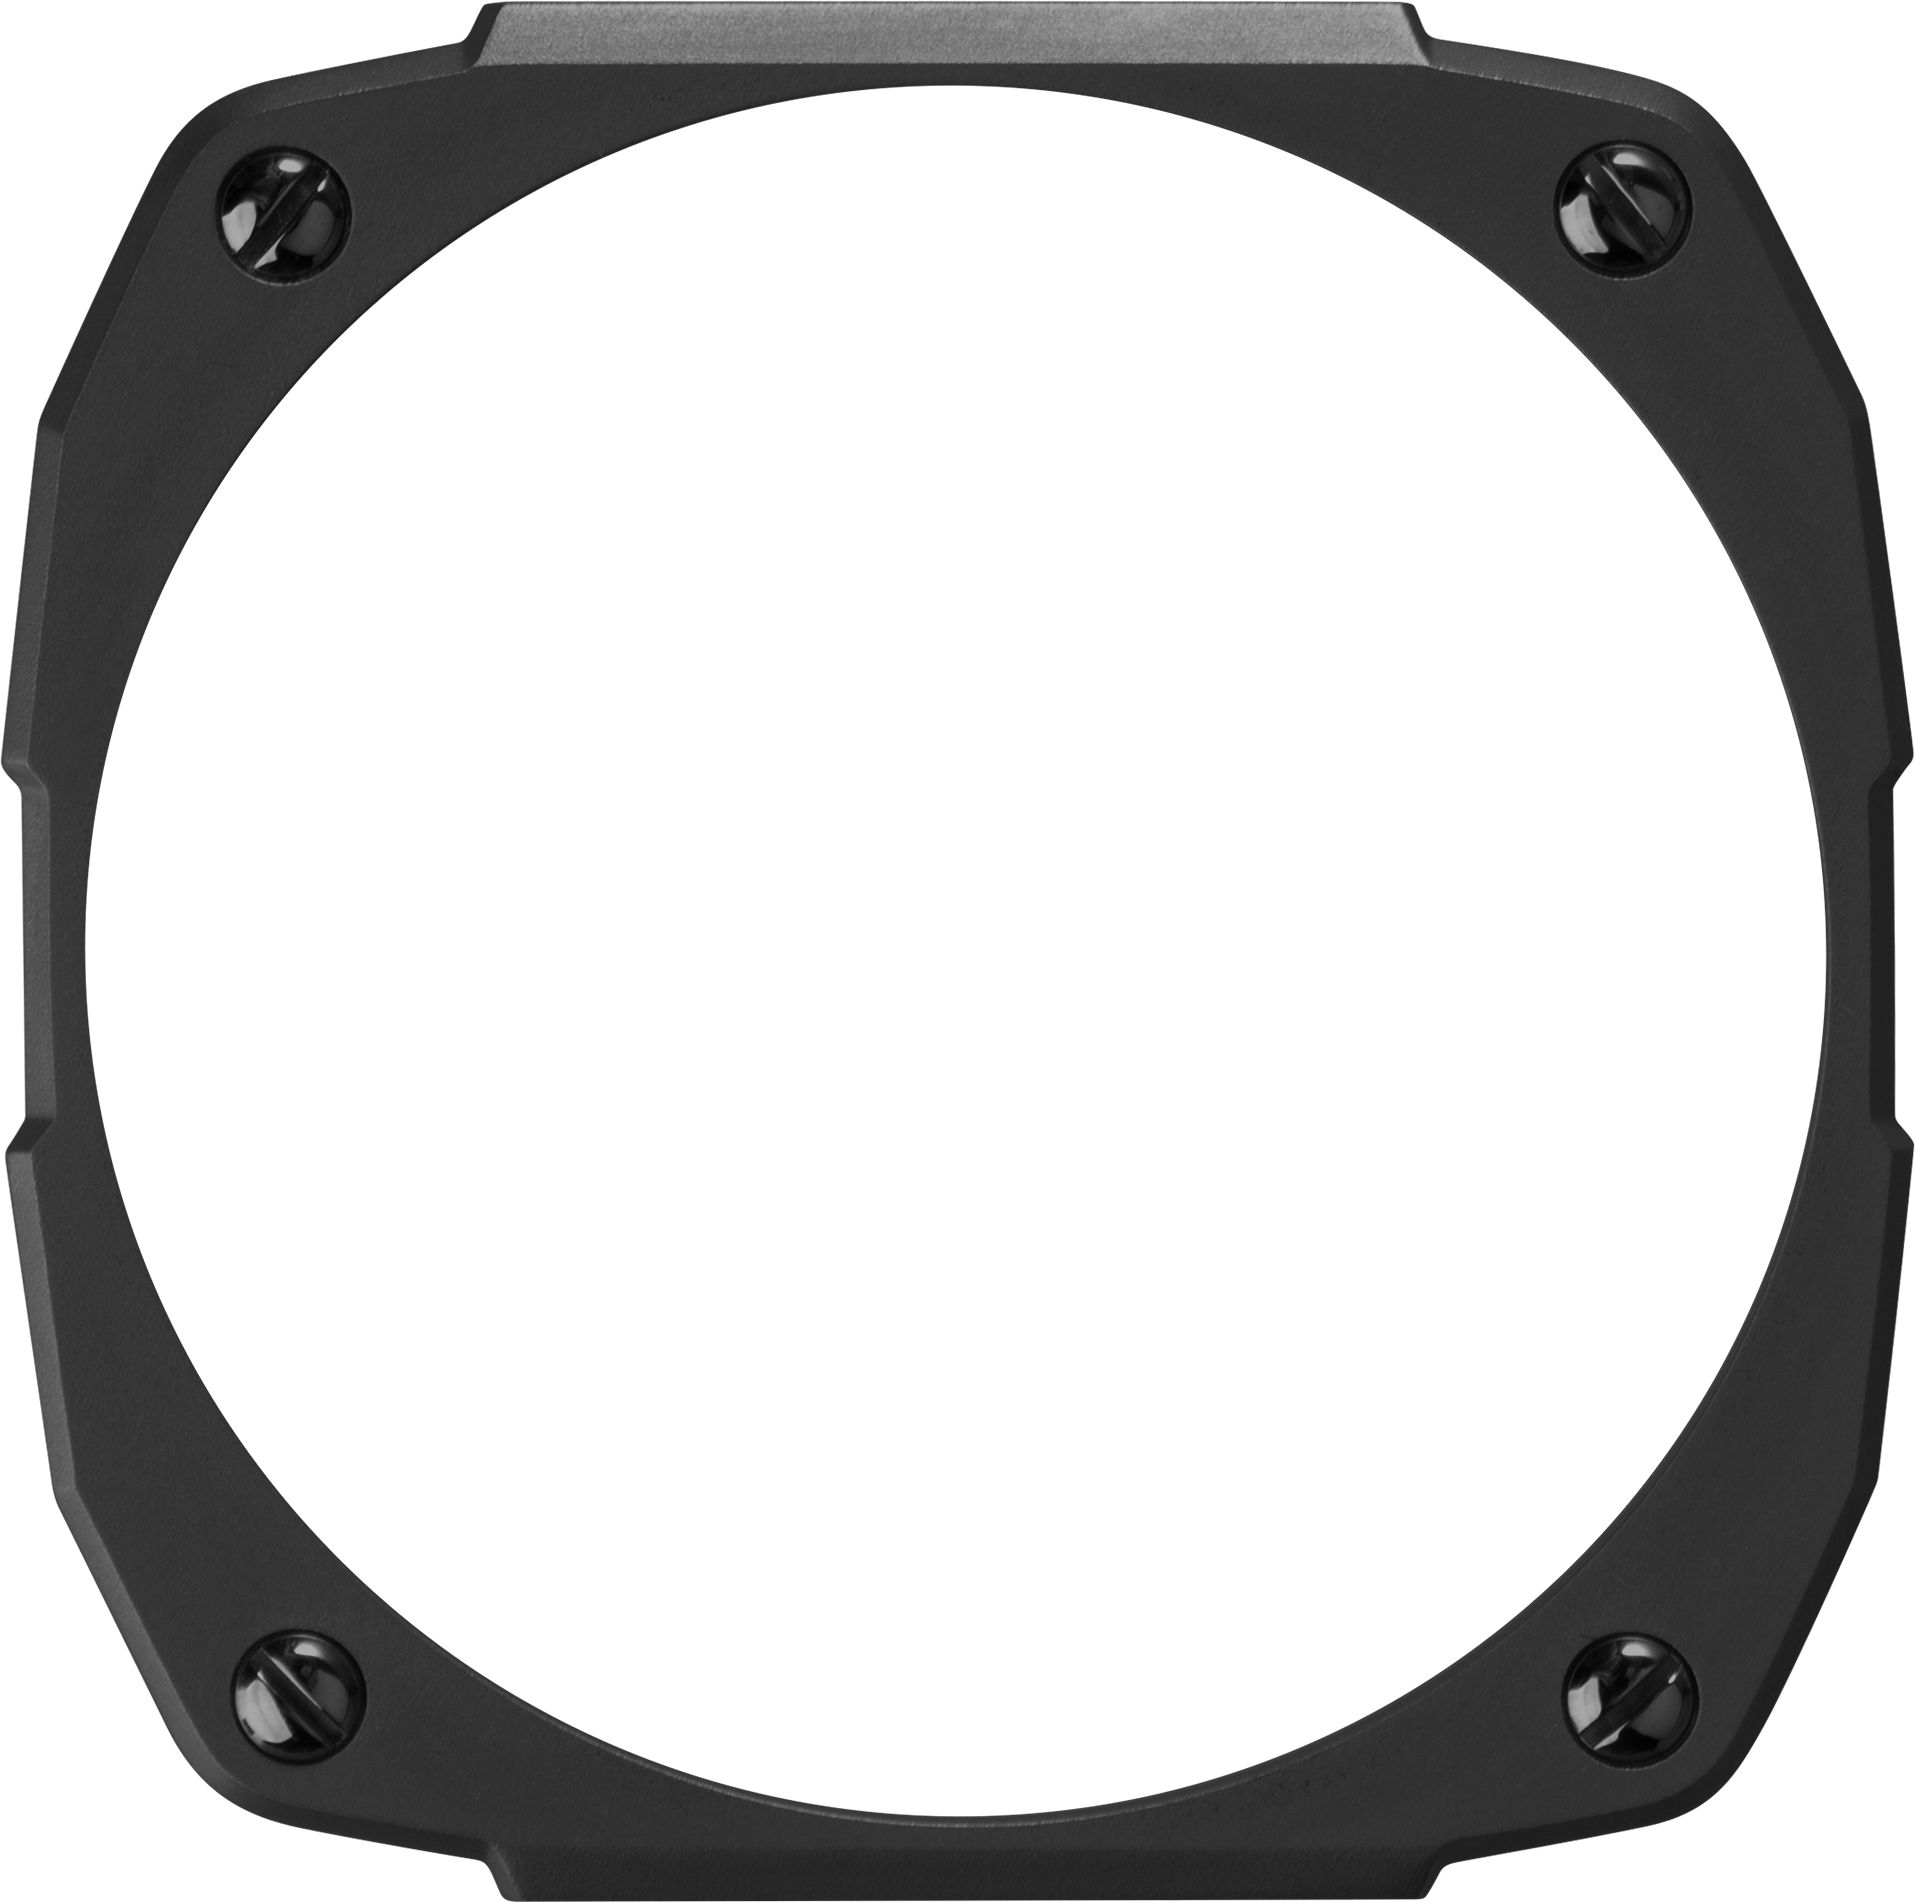 MOD 47 face plate - Black